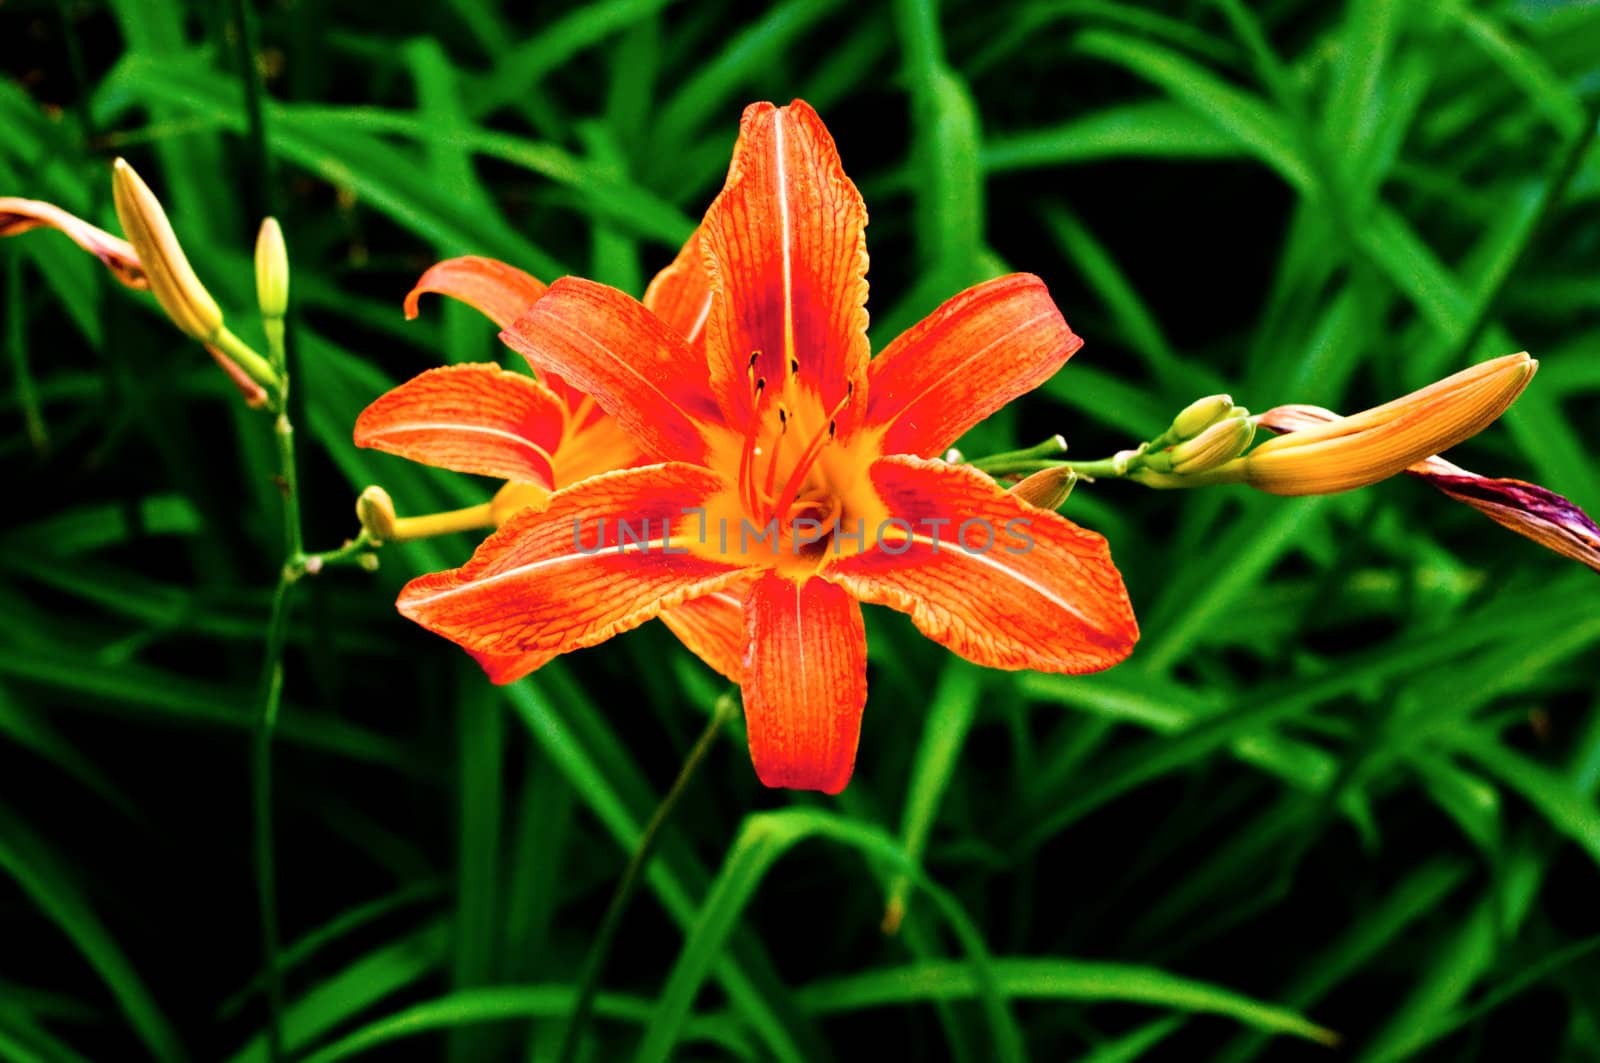 Beautiful flower close up in a garden